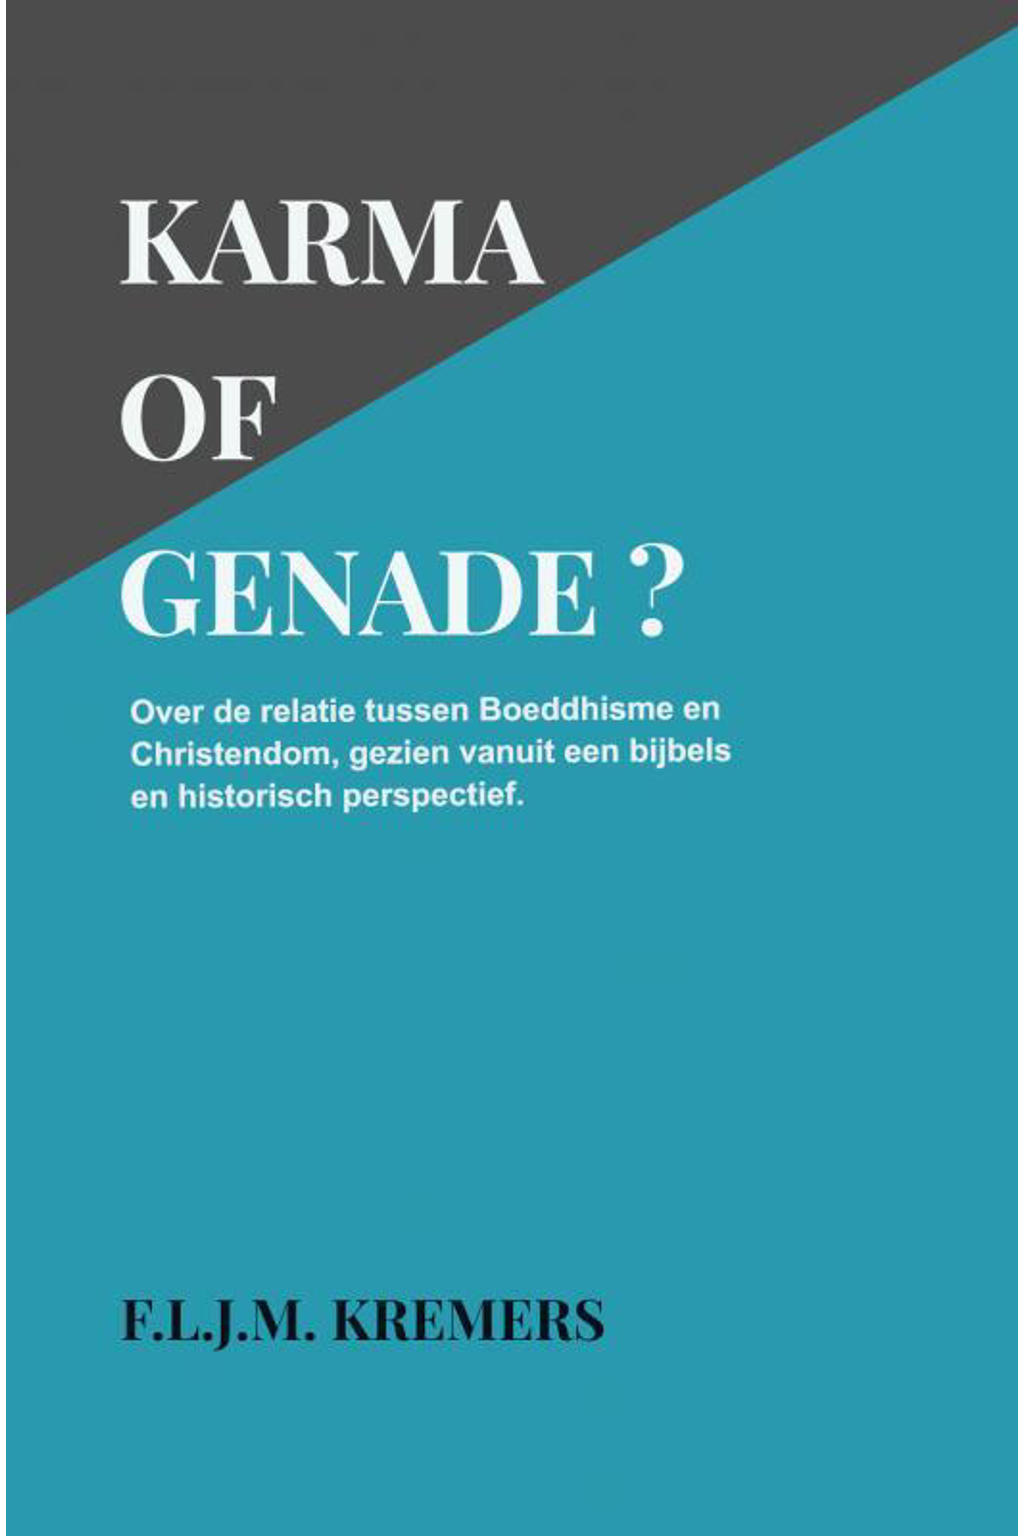 Karma of Genade? - F.L.J.M. Kremers